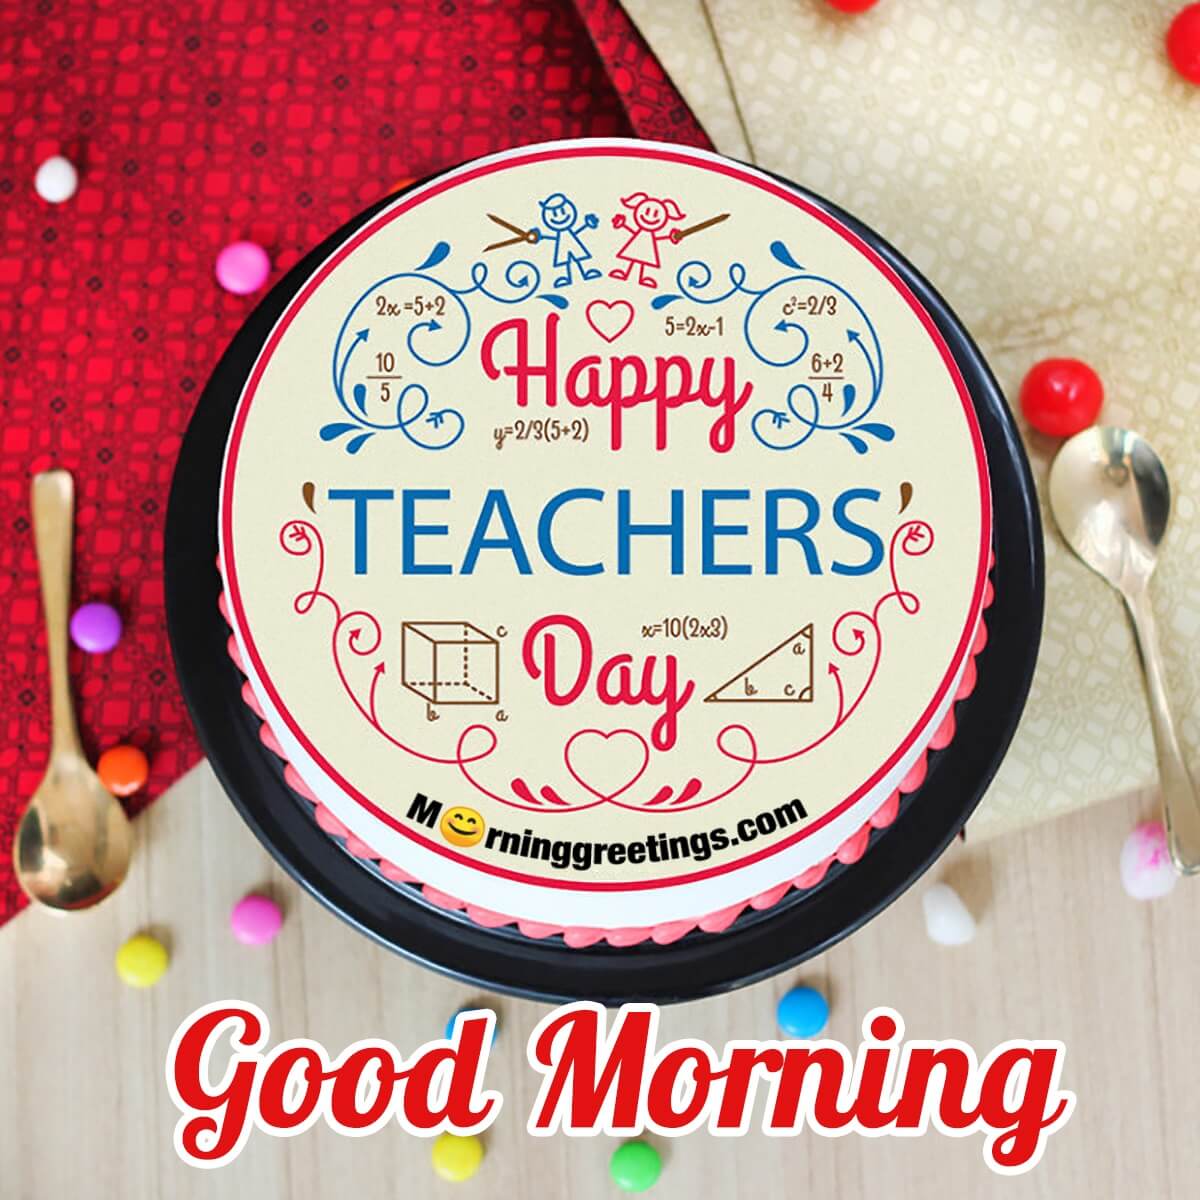 Good Morning Happy Teacher's Day Cake Image For Maths Teacher